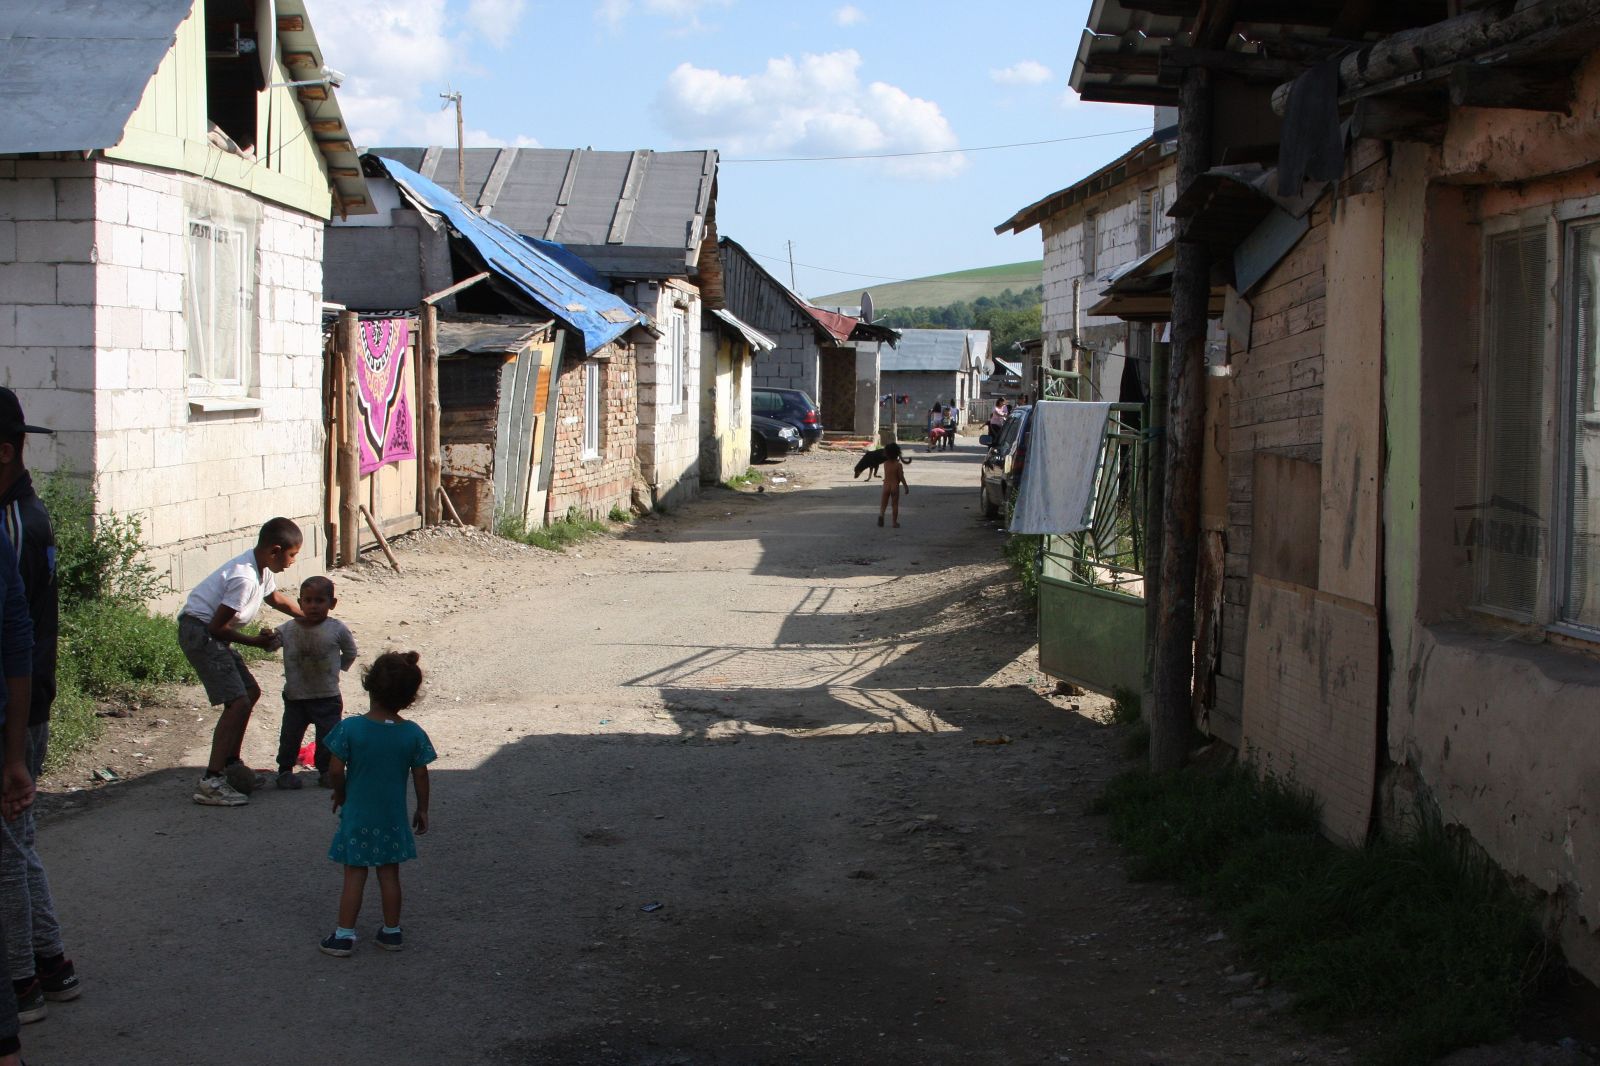 Nazreli sme do rómskych domov a boli sme prekvapení. Našli sme veselé interiéry, slušné bývanie, chuť stavať a pracovať